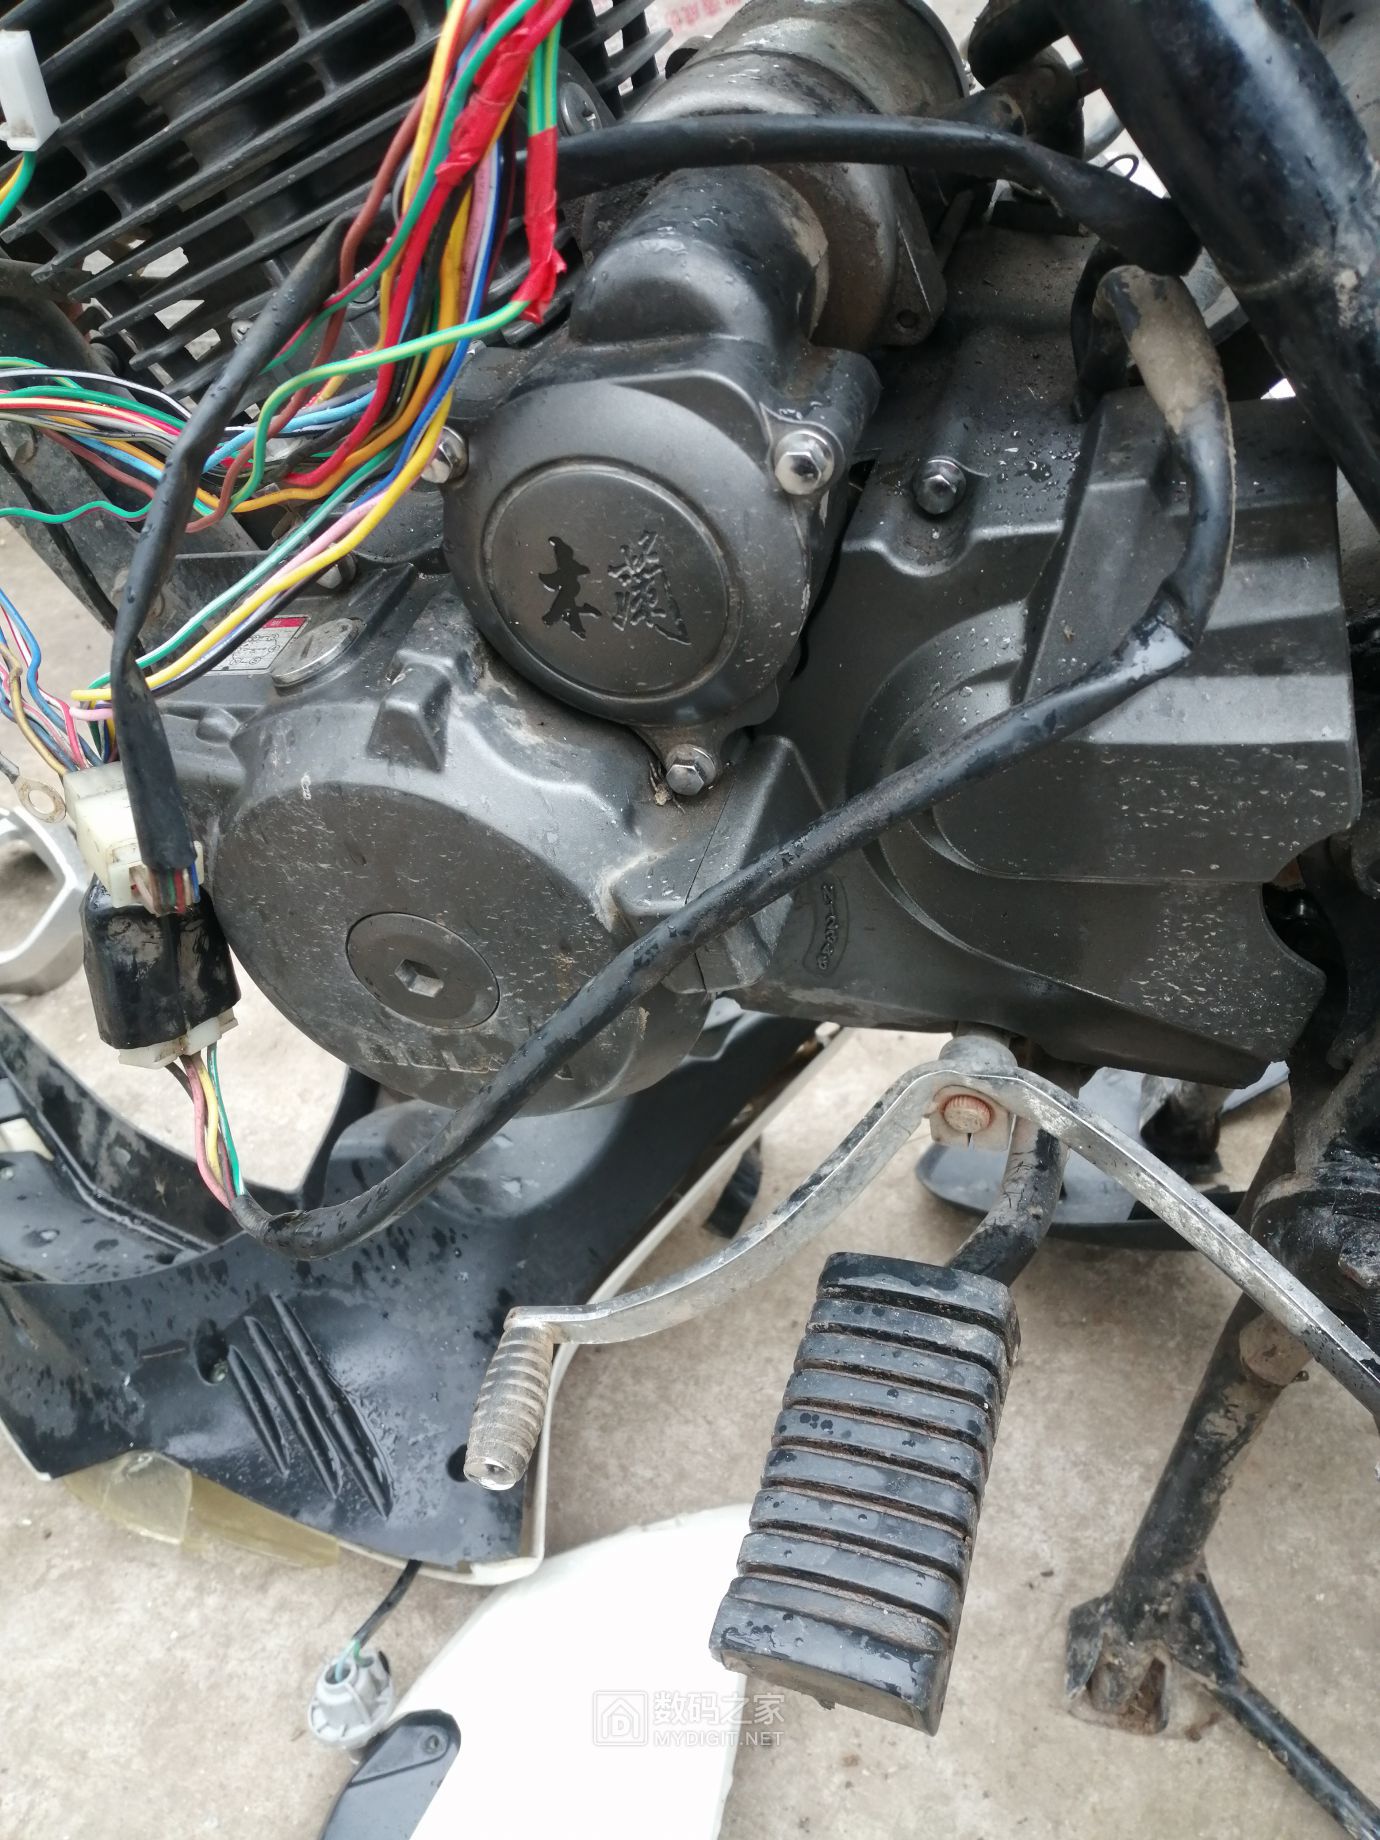 木兰150摩托车拆机顺便问问发动机直接运行的方法,想做个发电